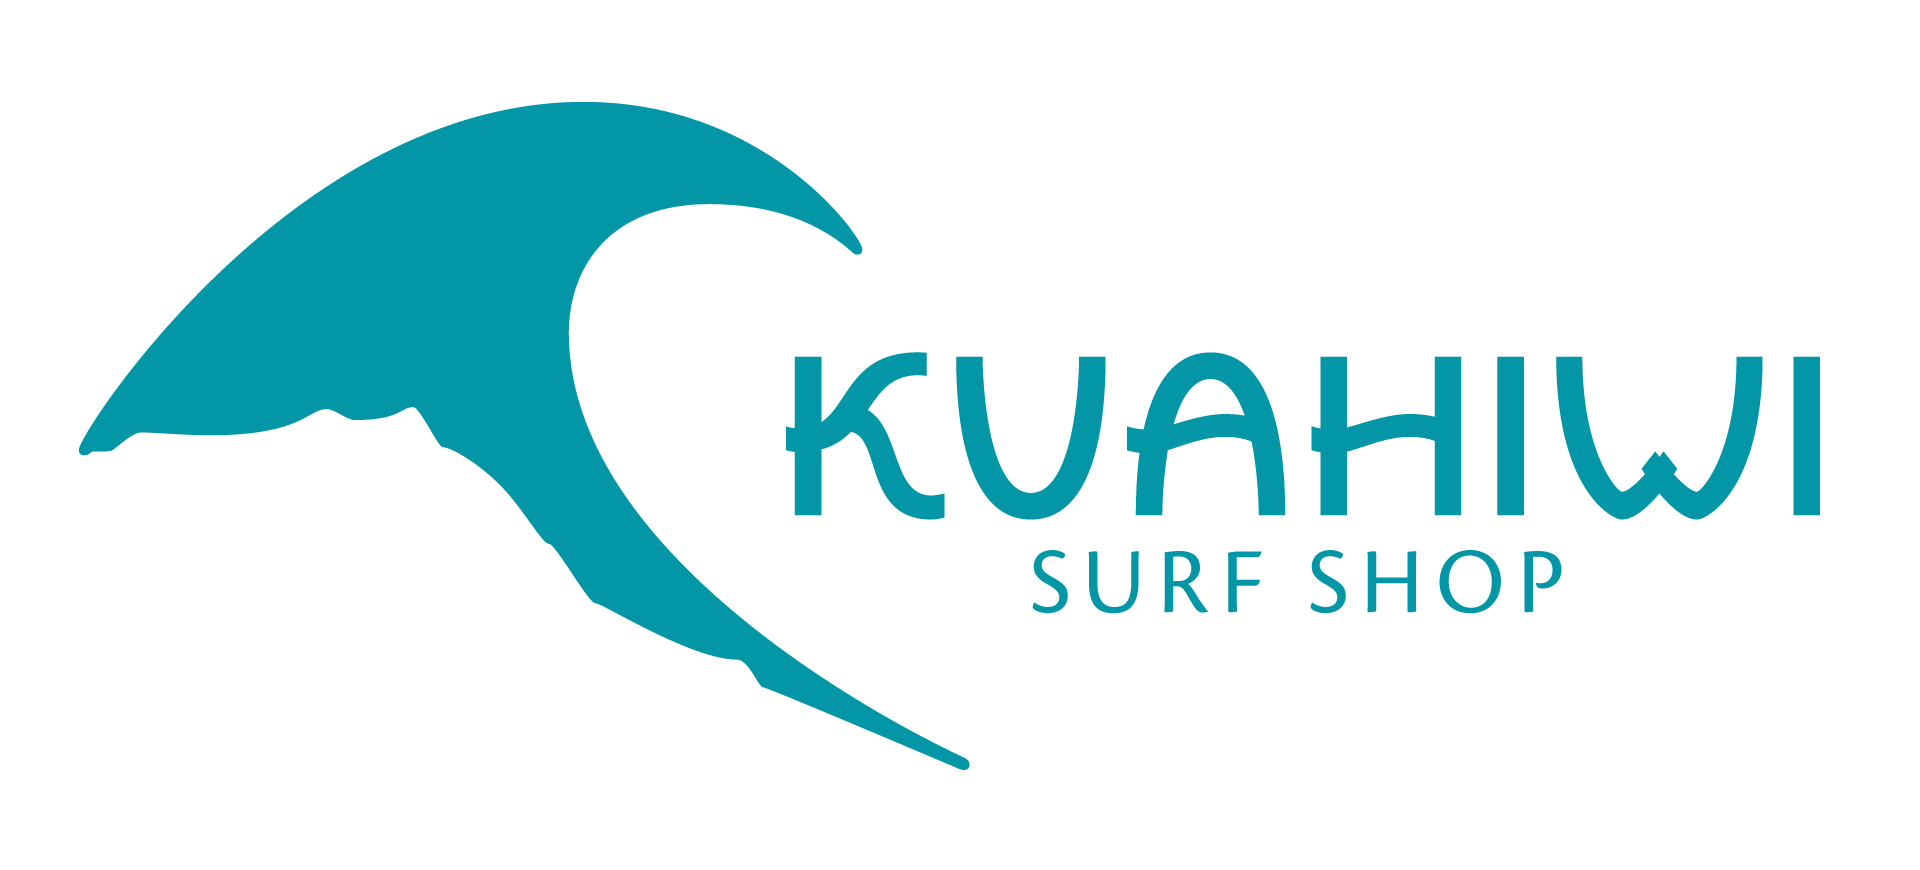 Kuahiwi Surf Shop Logo